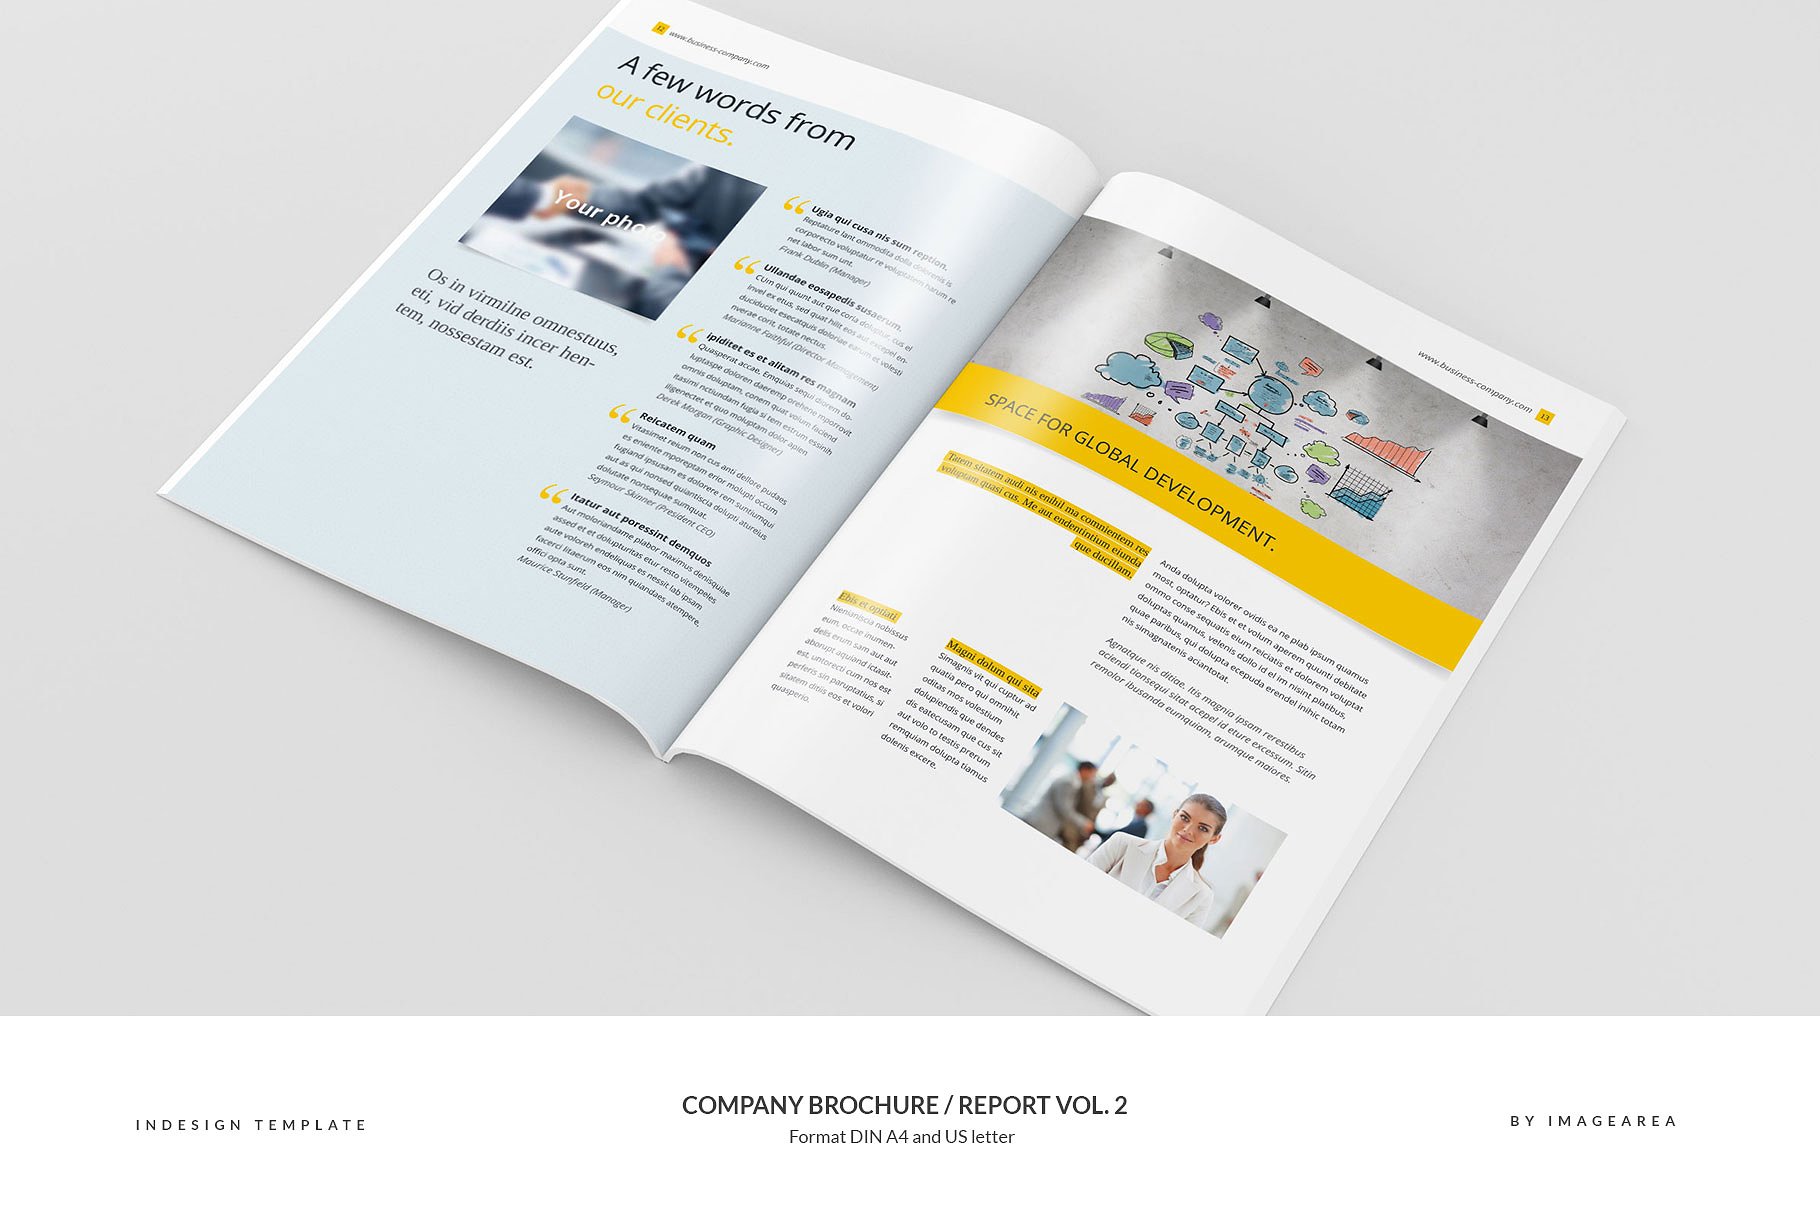 企业品牌宣传画册/企业年报设计模板v2 Company Brochure / Report Vol. 2插图(7)